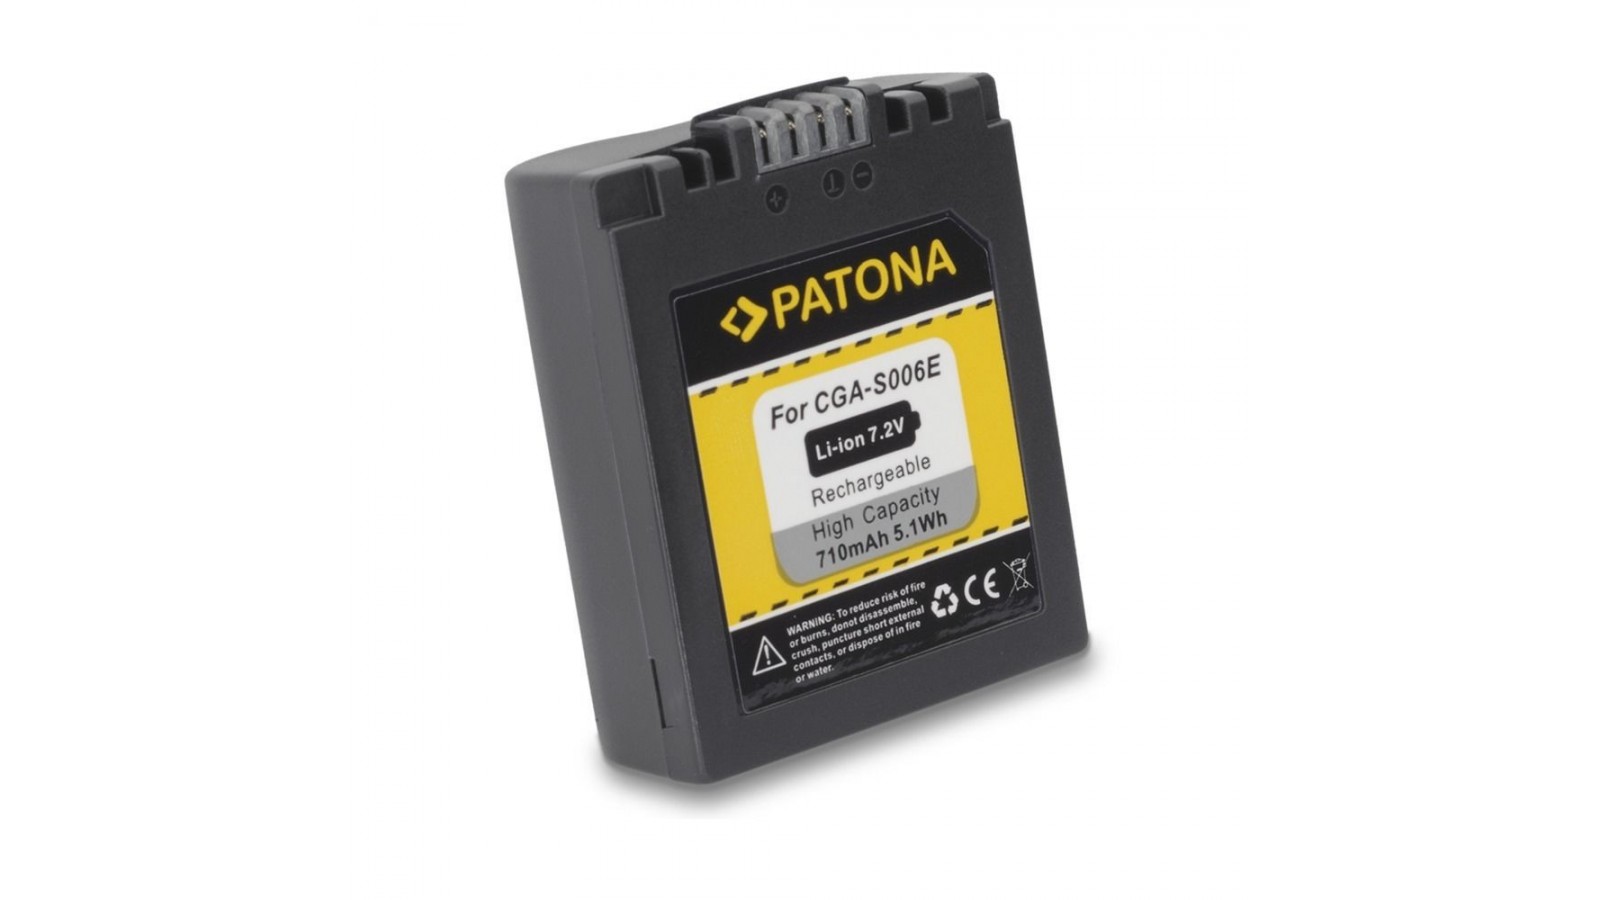 Batteria compatibile con Panasonic CGR-S006A, CGR-S006/E LUMIX DMC-FZ38 FZ50 FZ7 FZ8 